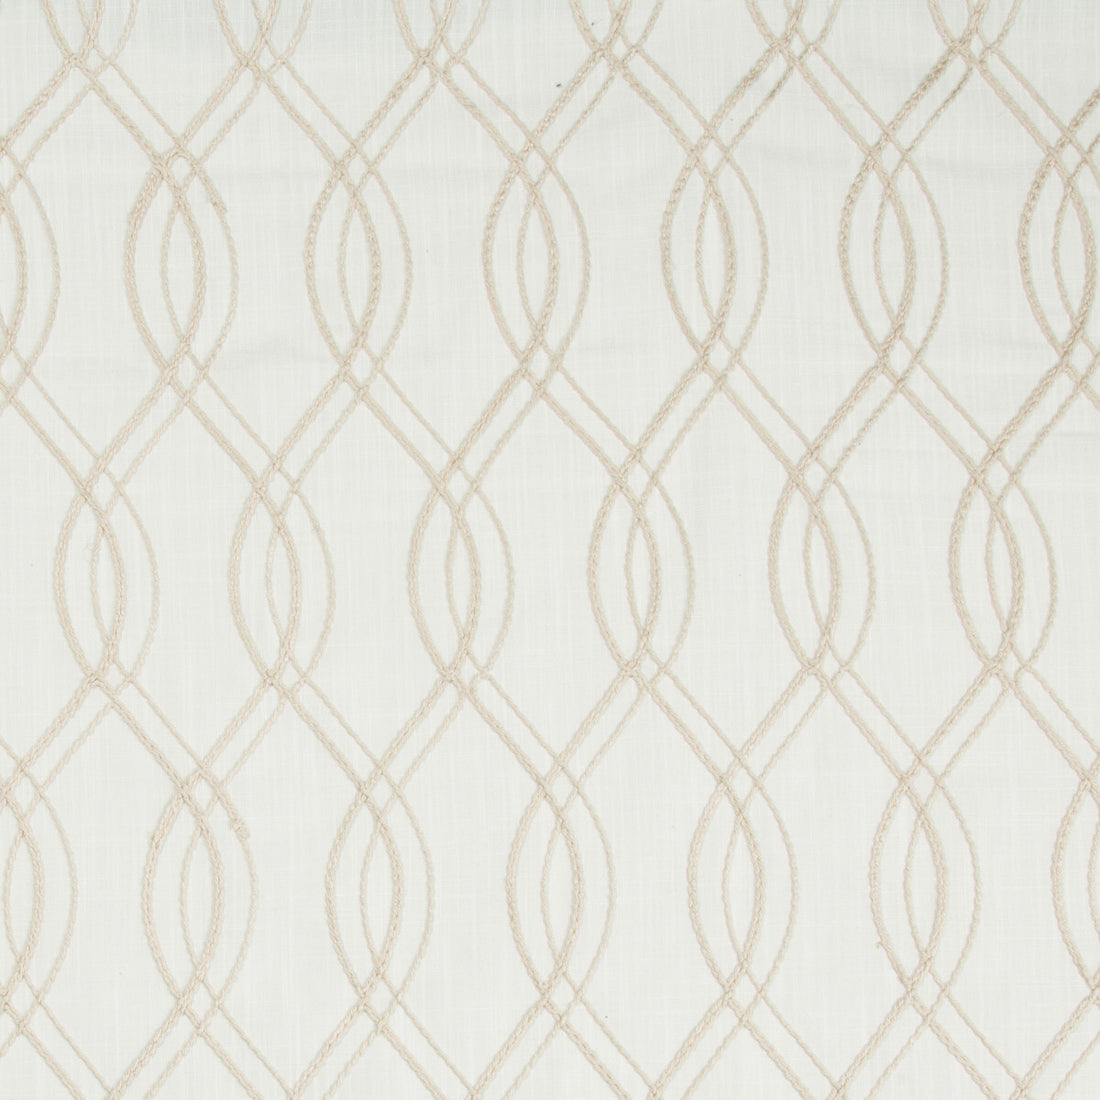 Kravet Basics fabric in 4355-116 color - pattern 4355.116.0 - by Kravet Basics